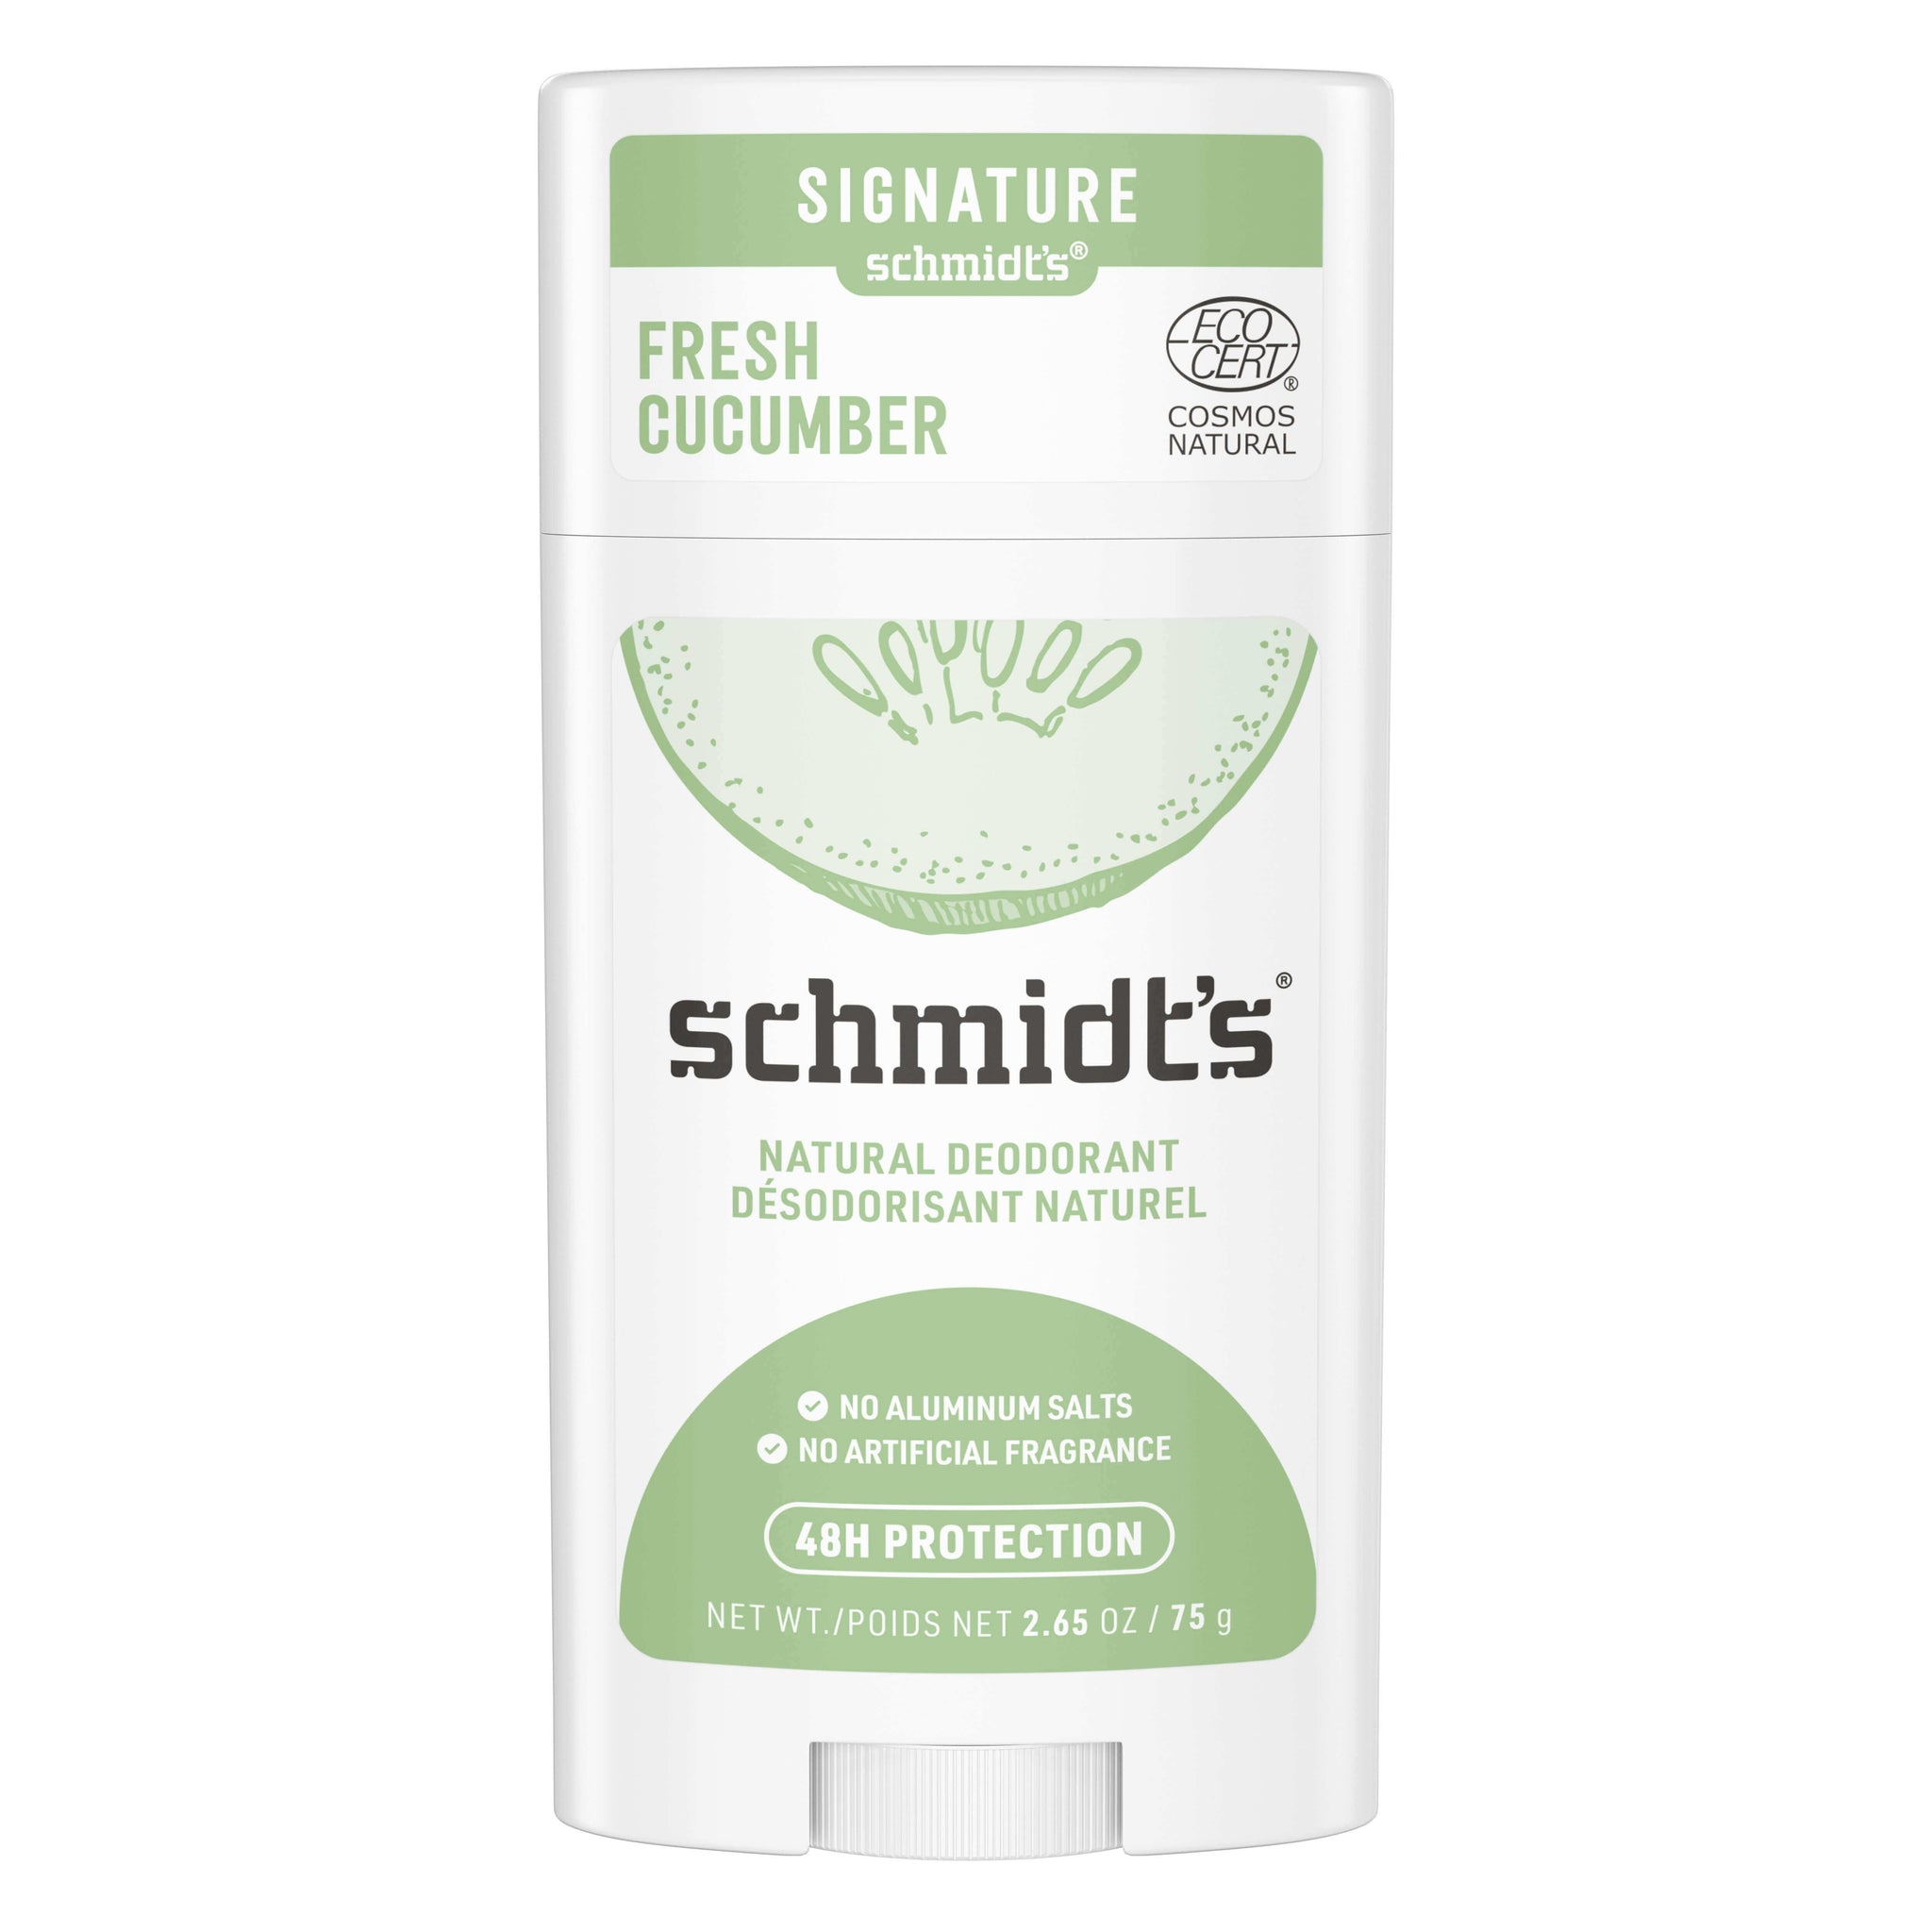 Schmidt's Fresh Cucumber Signature Deodorant 75g